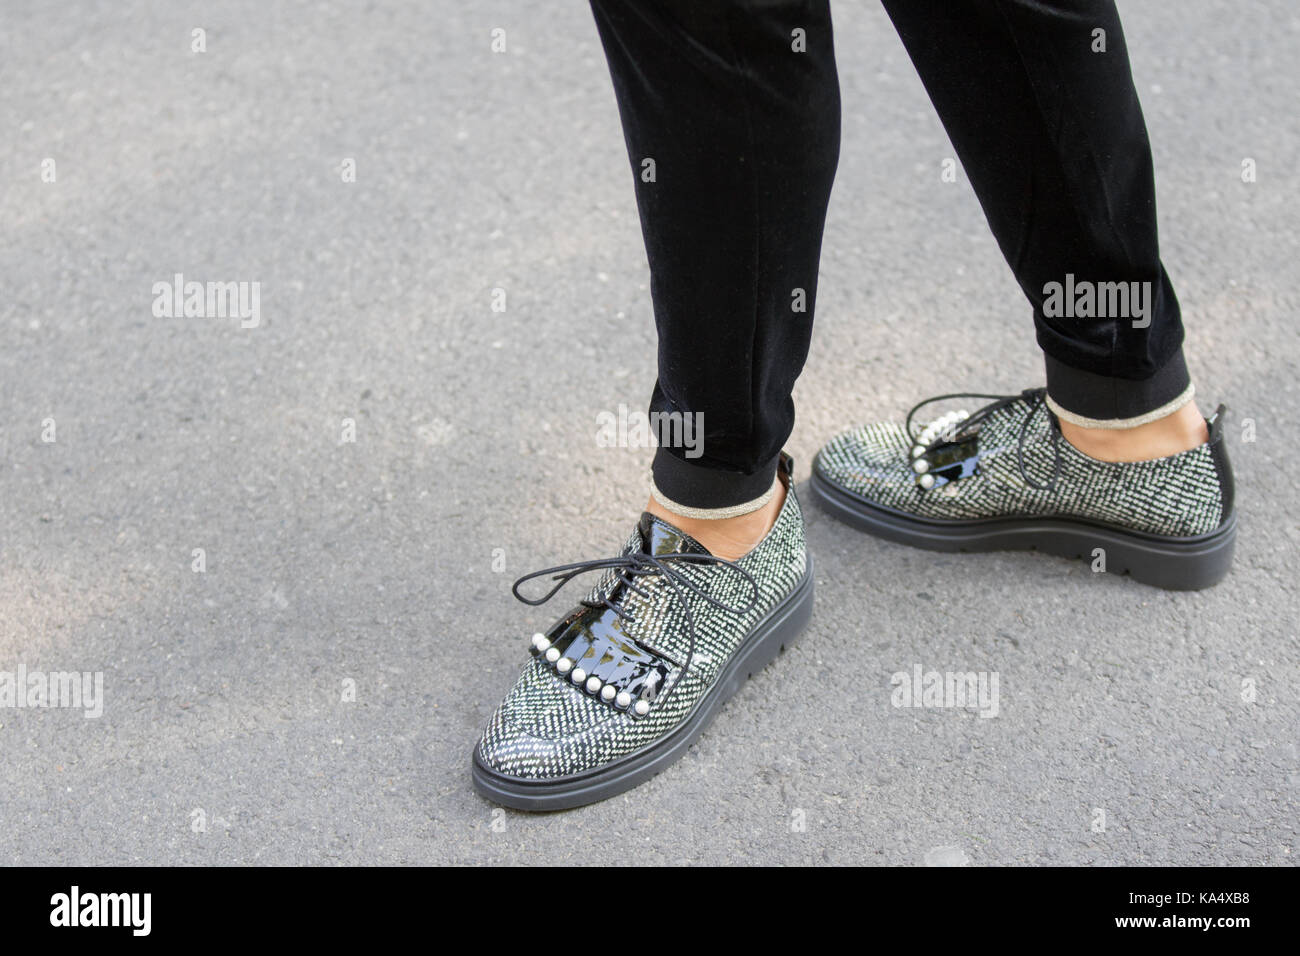 Milan, Italie - 22 septembre 2017 : modèle portant une paire de chaussures blanches et les cases noires avec lacets et pendant le défilé armani, photographier Banque D'Images